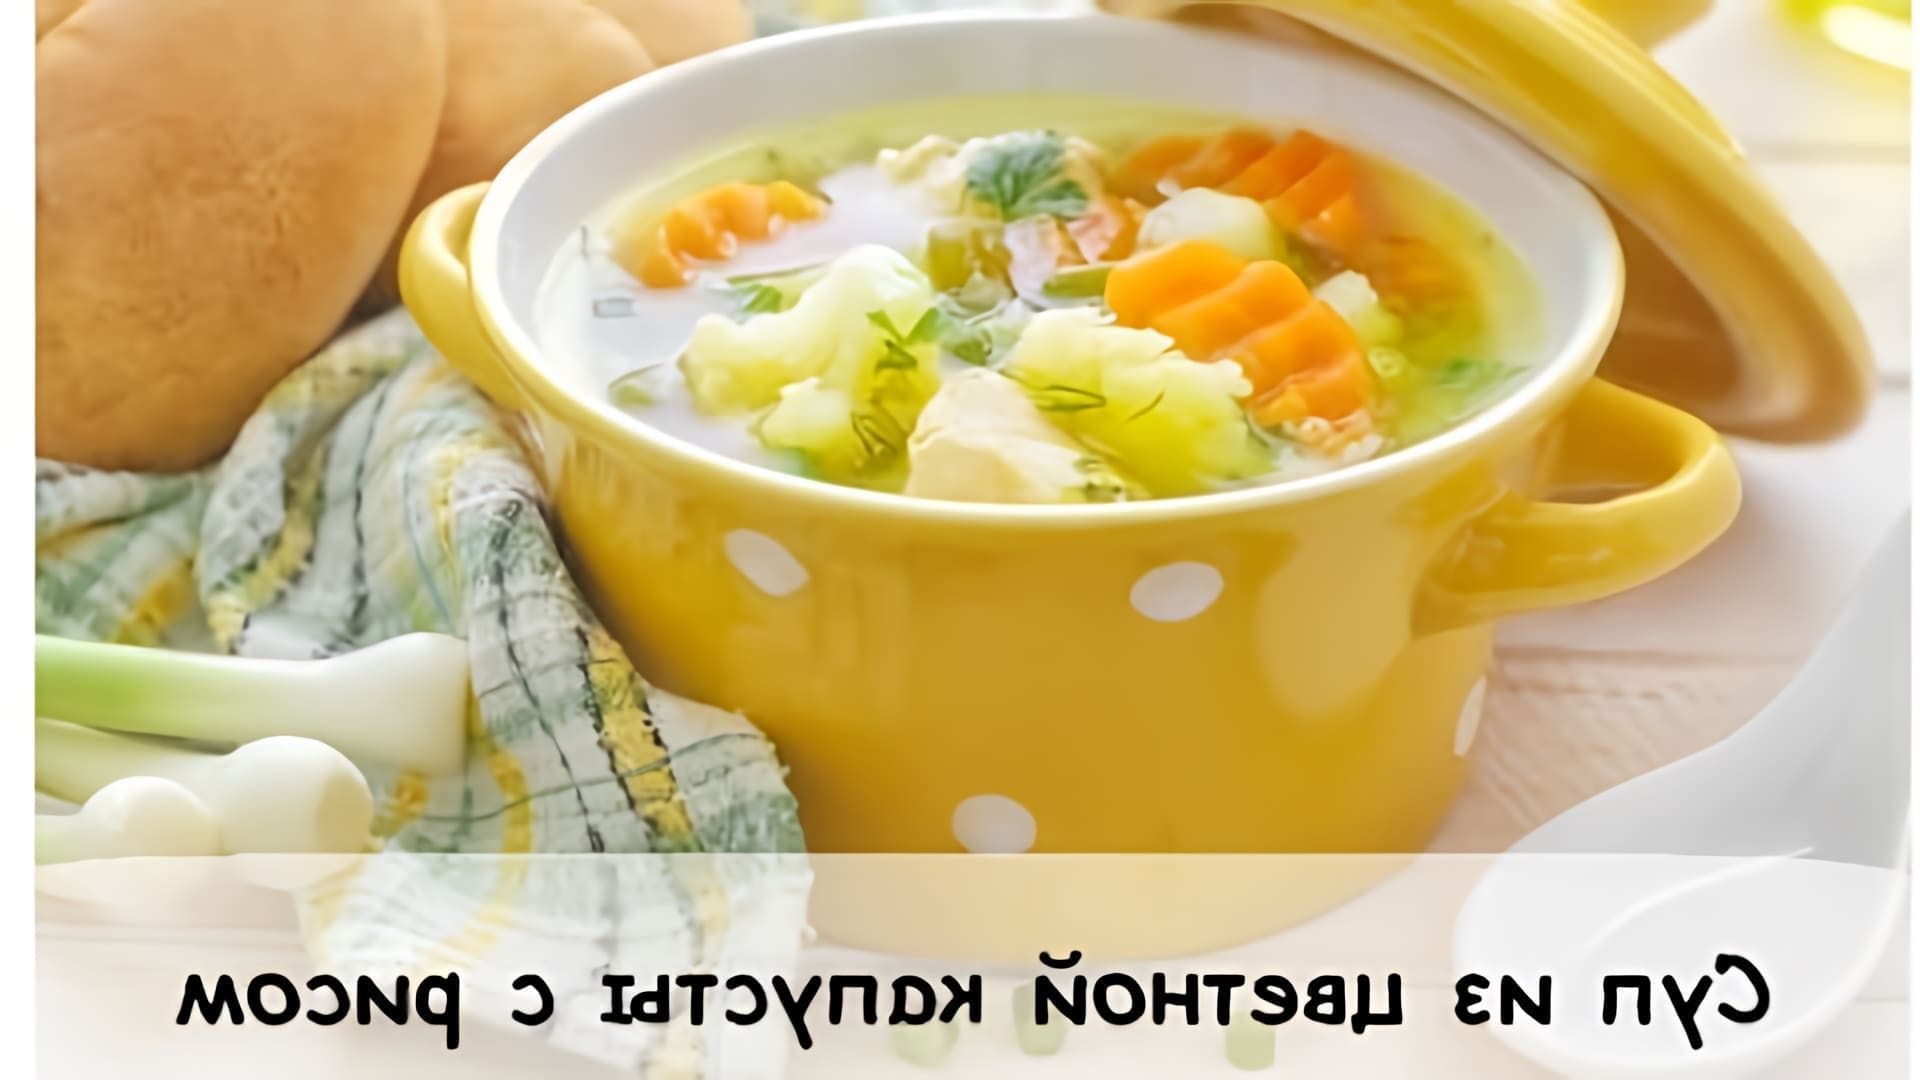 В этом видео Катя готовит диетический суп из цветной капусты с рисом